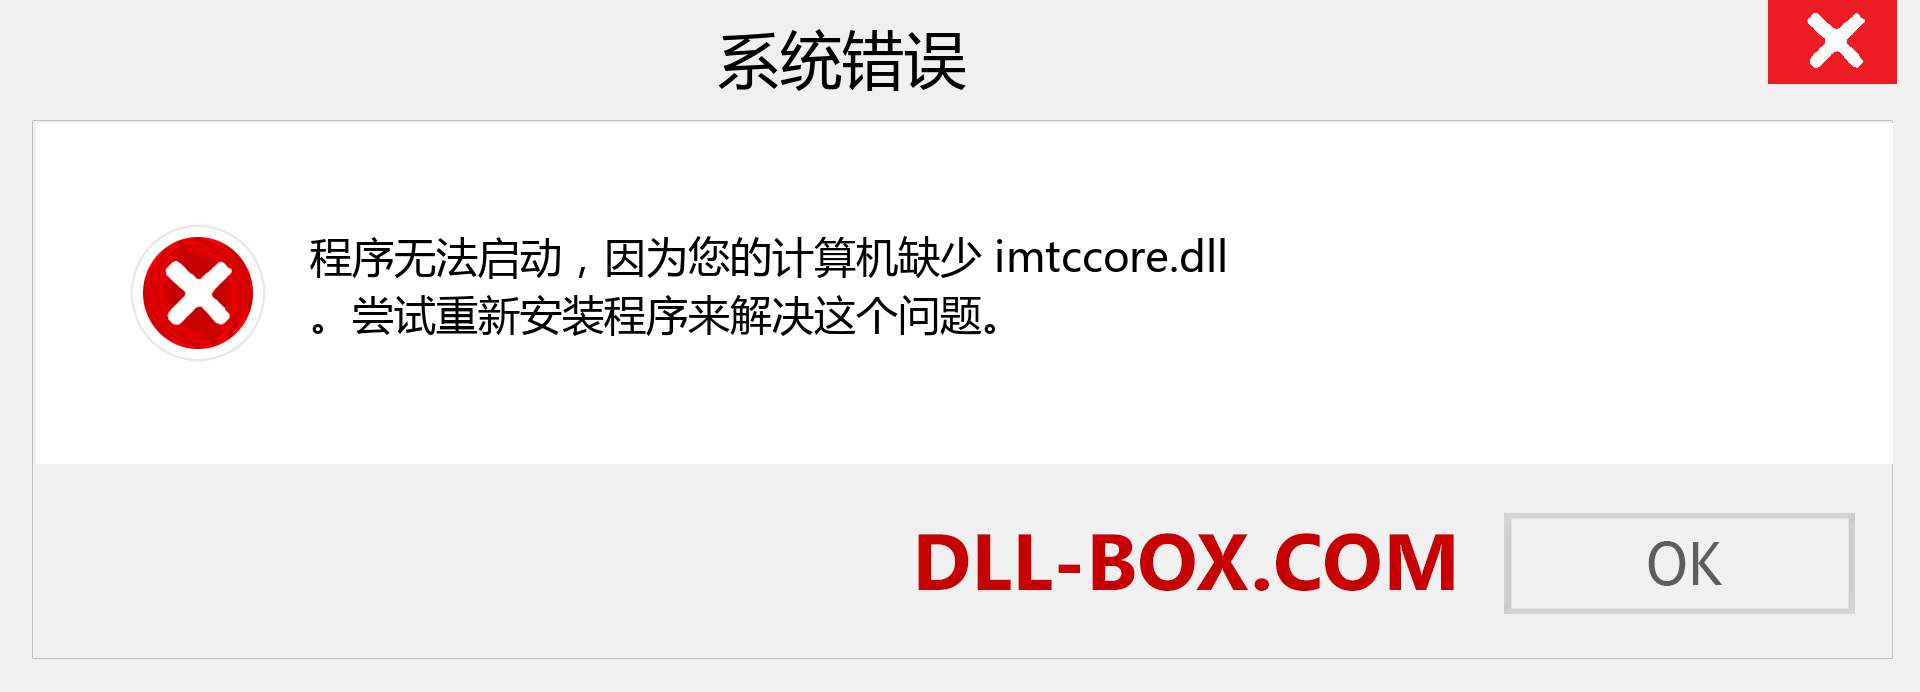 imtccore.dll 文件丢失？。 适用于 Windows 7、8、10 的下载 - 修复 Windows、照片、图像上的 imtccore dll 丢失错误